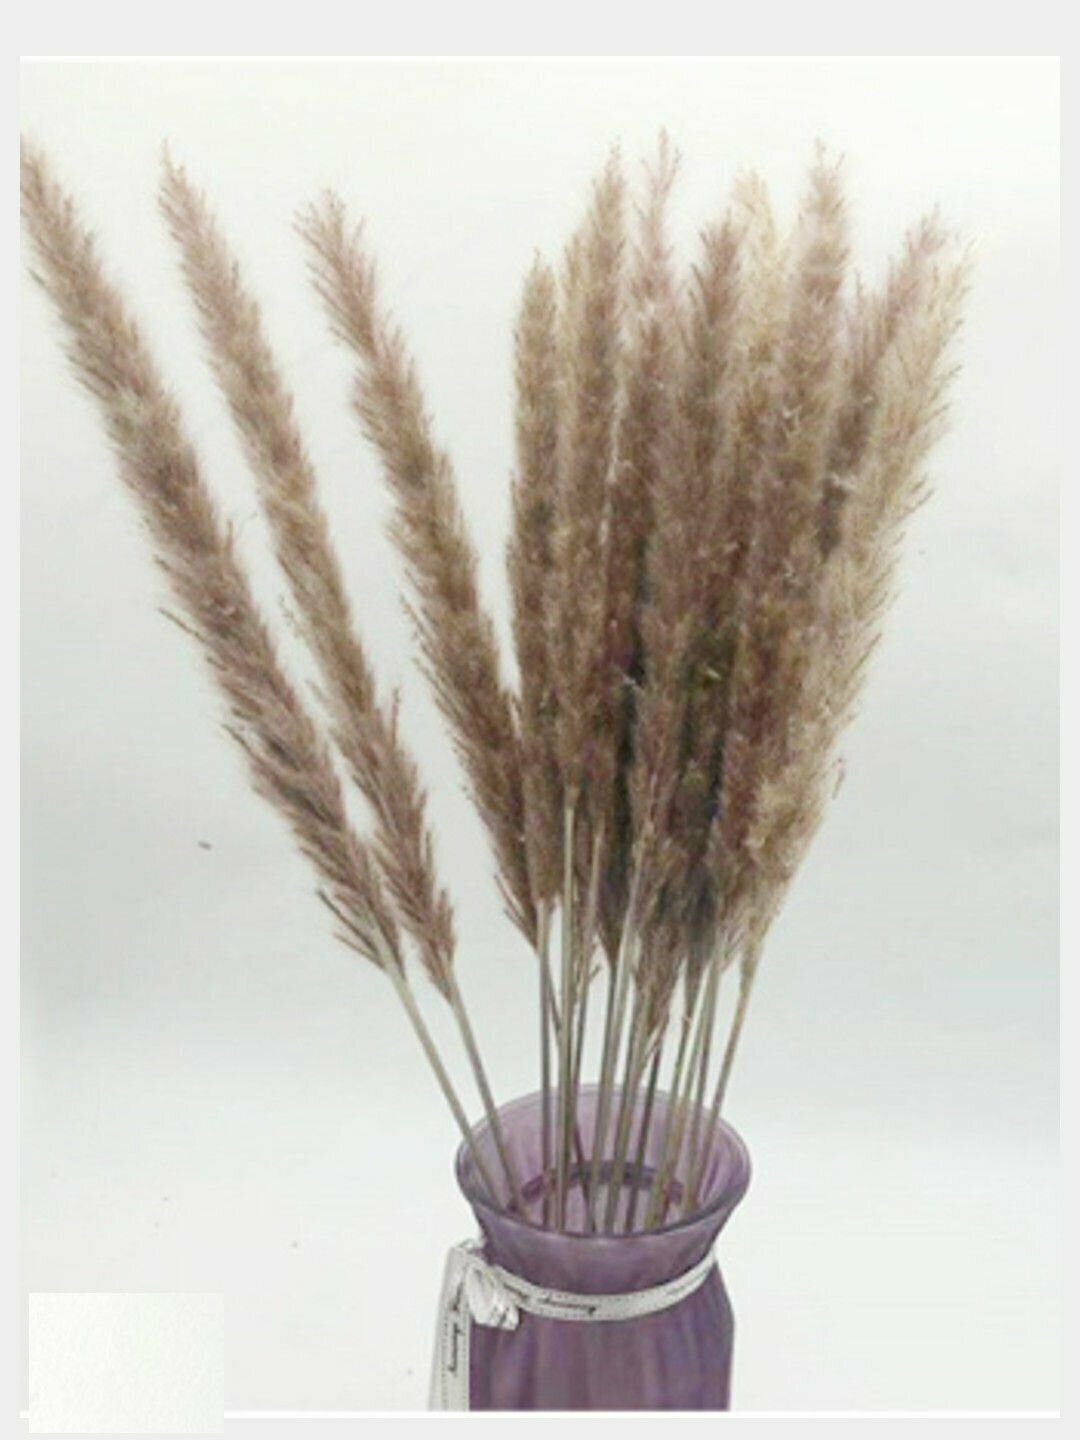 Букет из сухоцветов пампасная трава мини, цвет коричневый